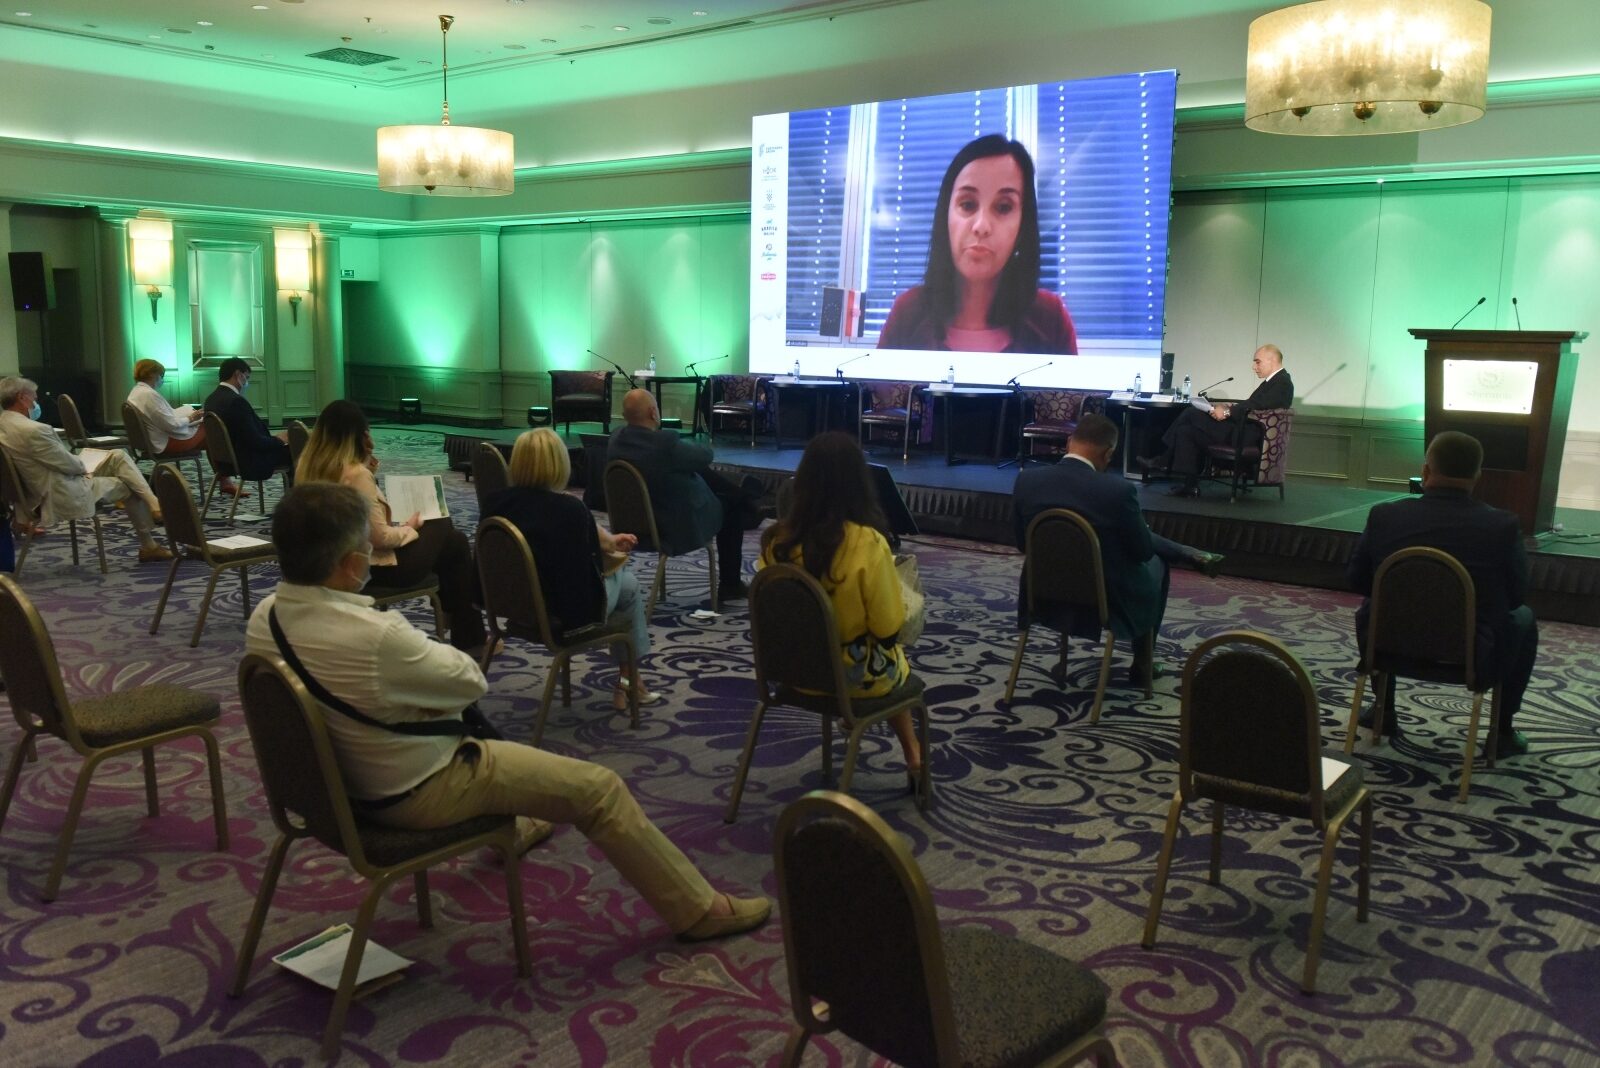 Zagreb: U Hotelu Sheraton održana je konferencija Zeleni plan u hrvatskoj poljoprivredi